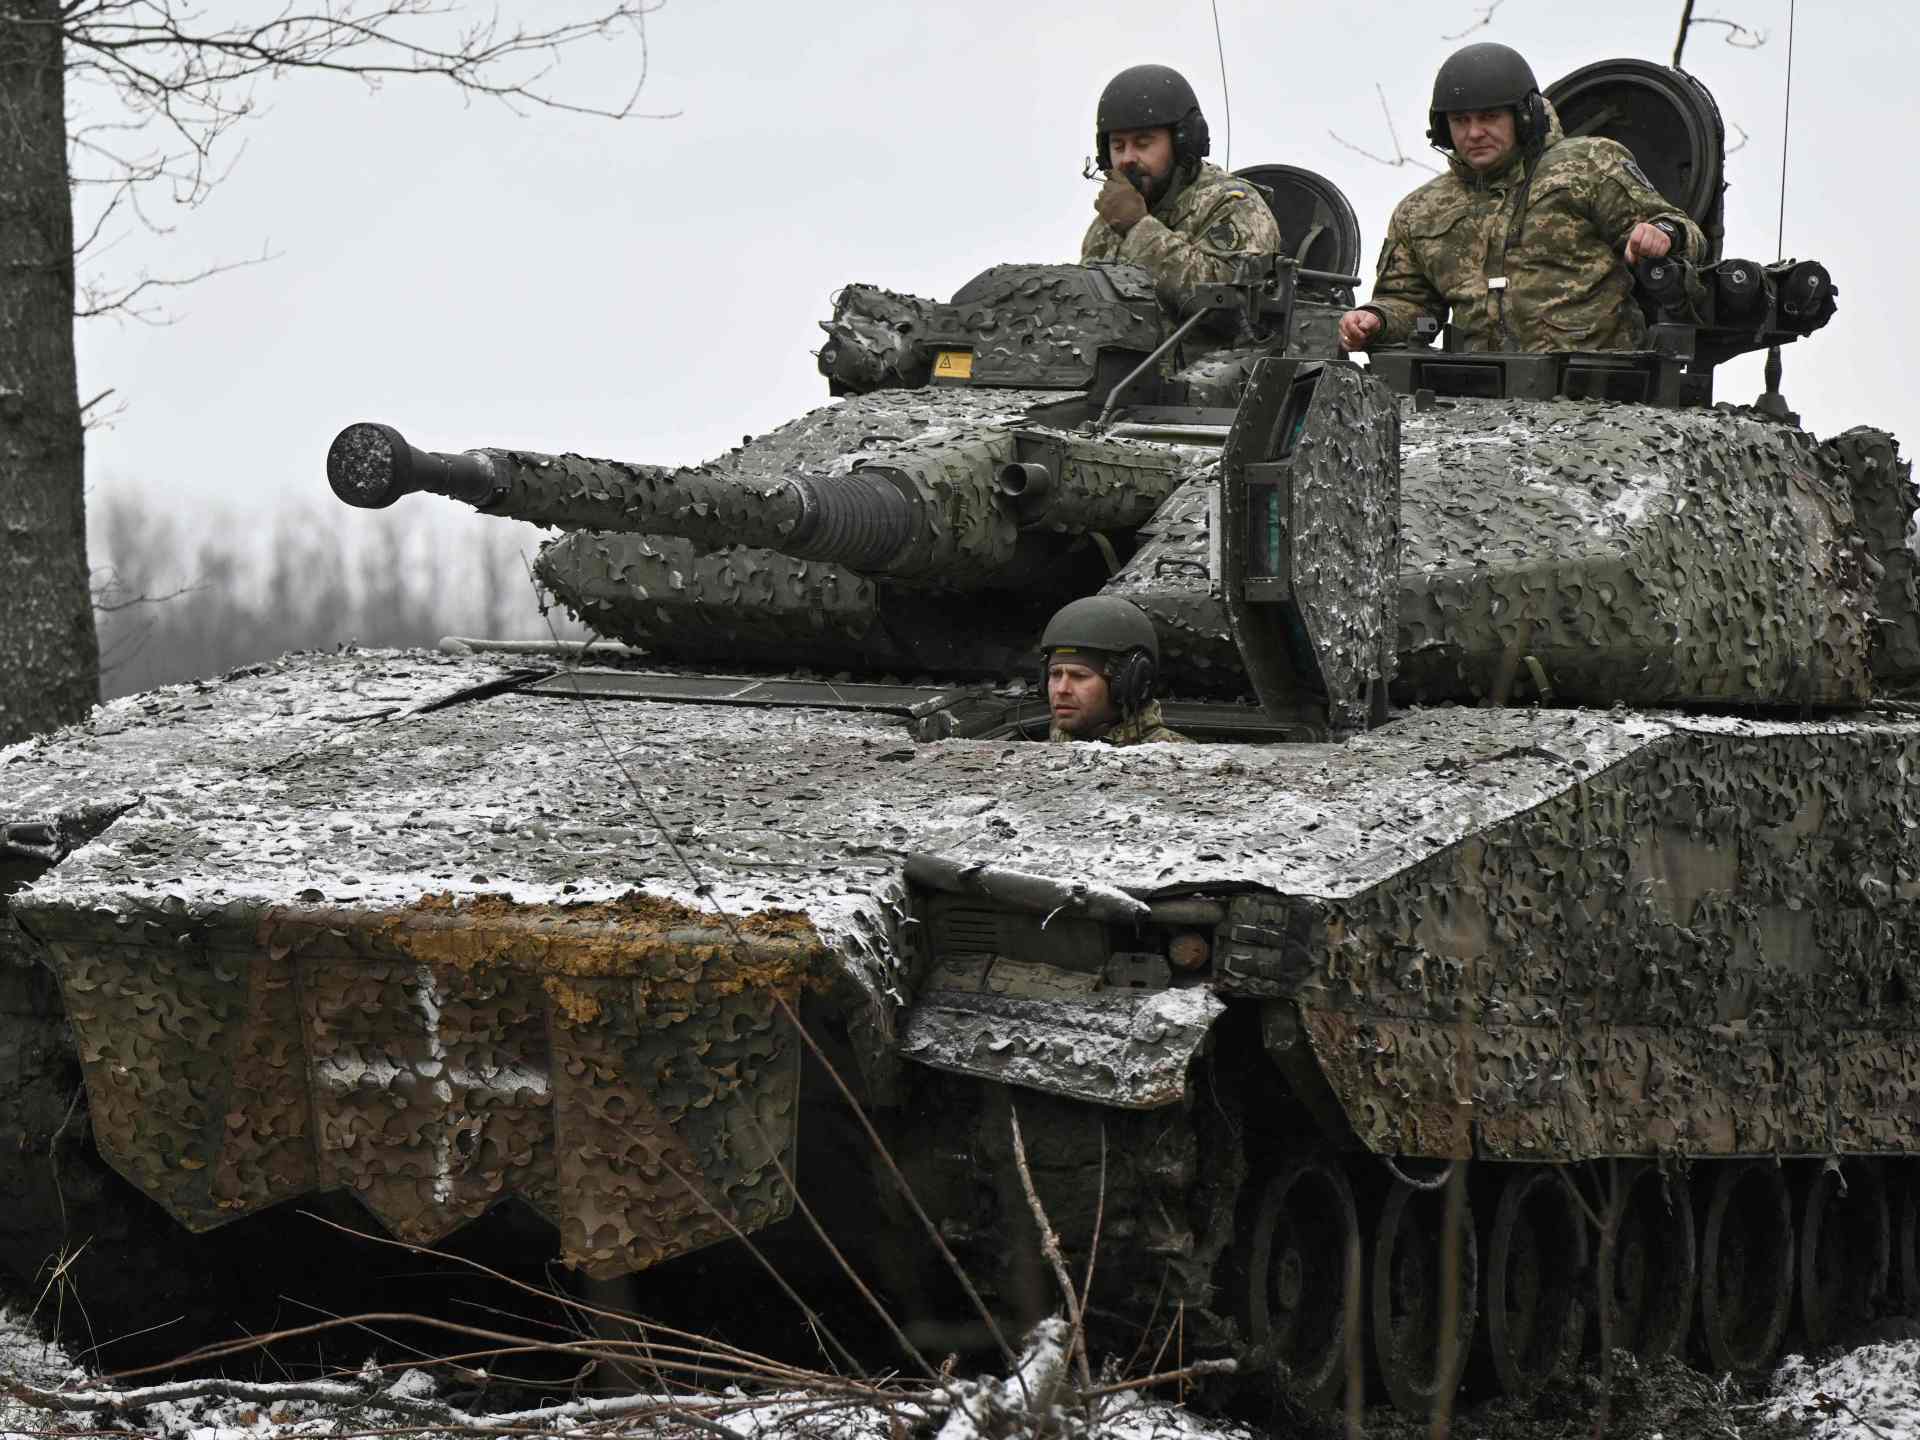 القوات الروسية تكثف هجومها للسيطرة على بلدة أوكرانية إستراتيجية | أخبار – البوكس نيوز